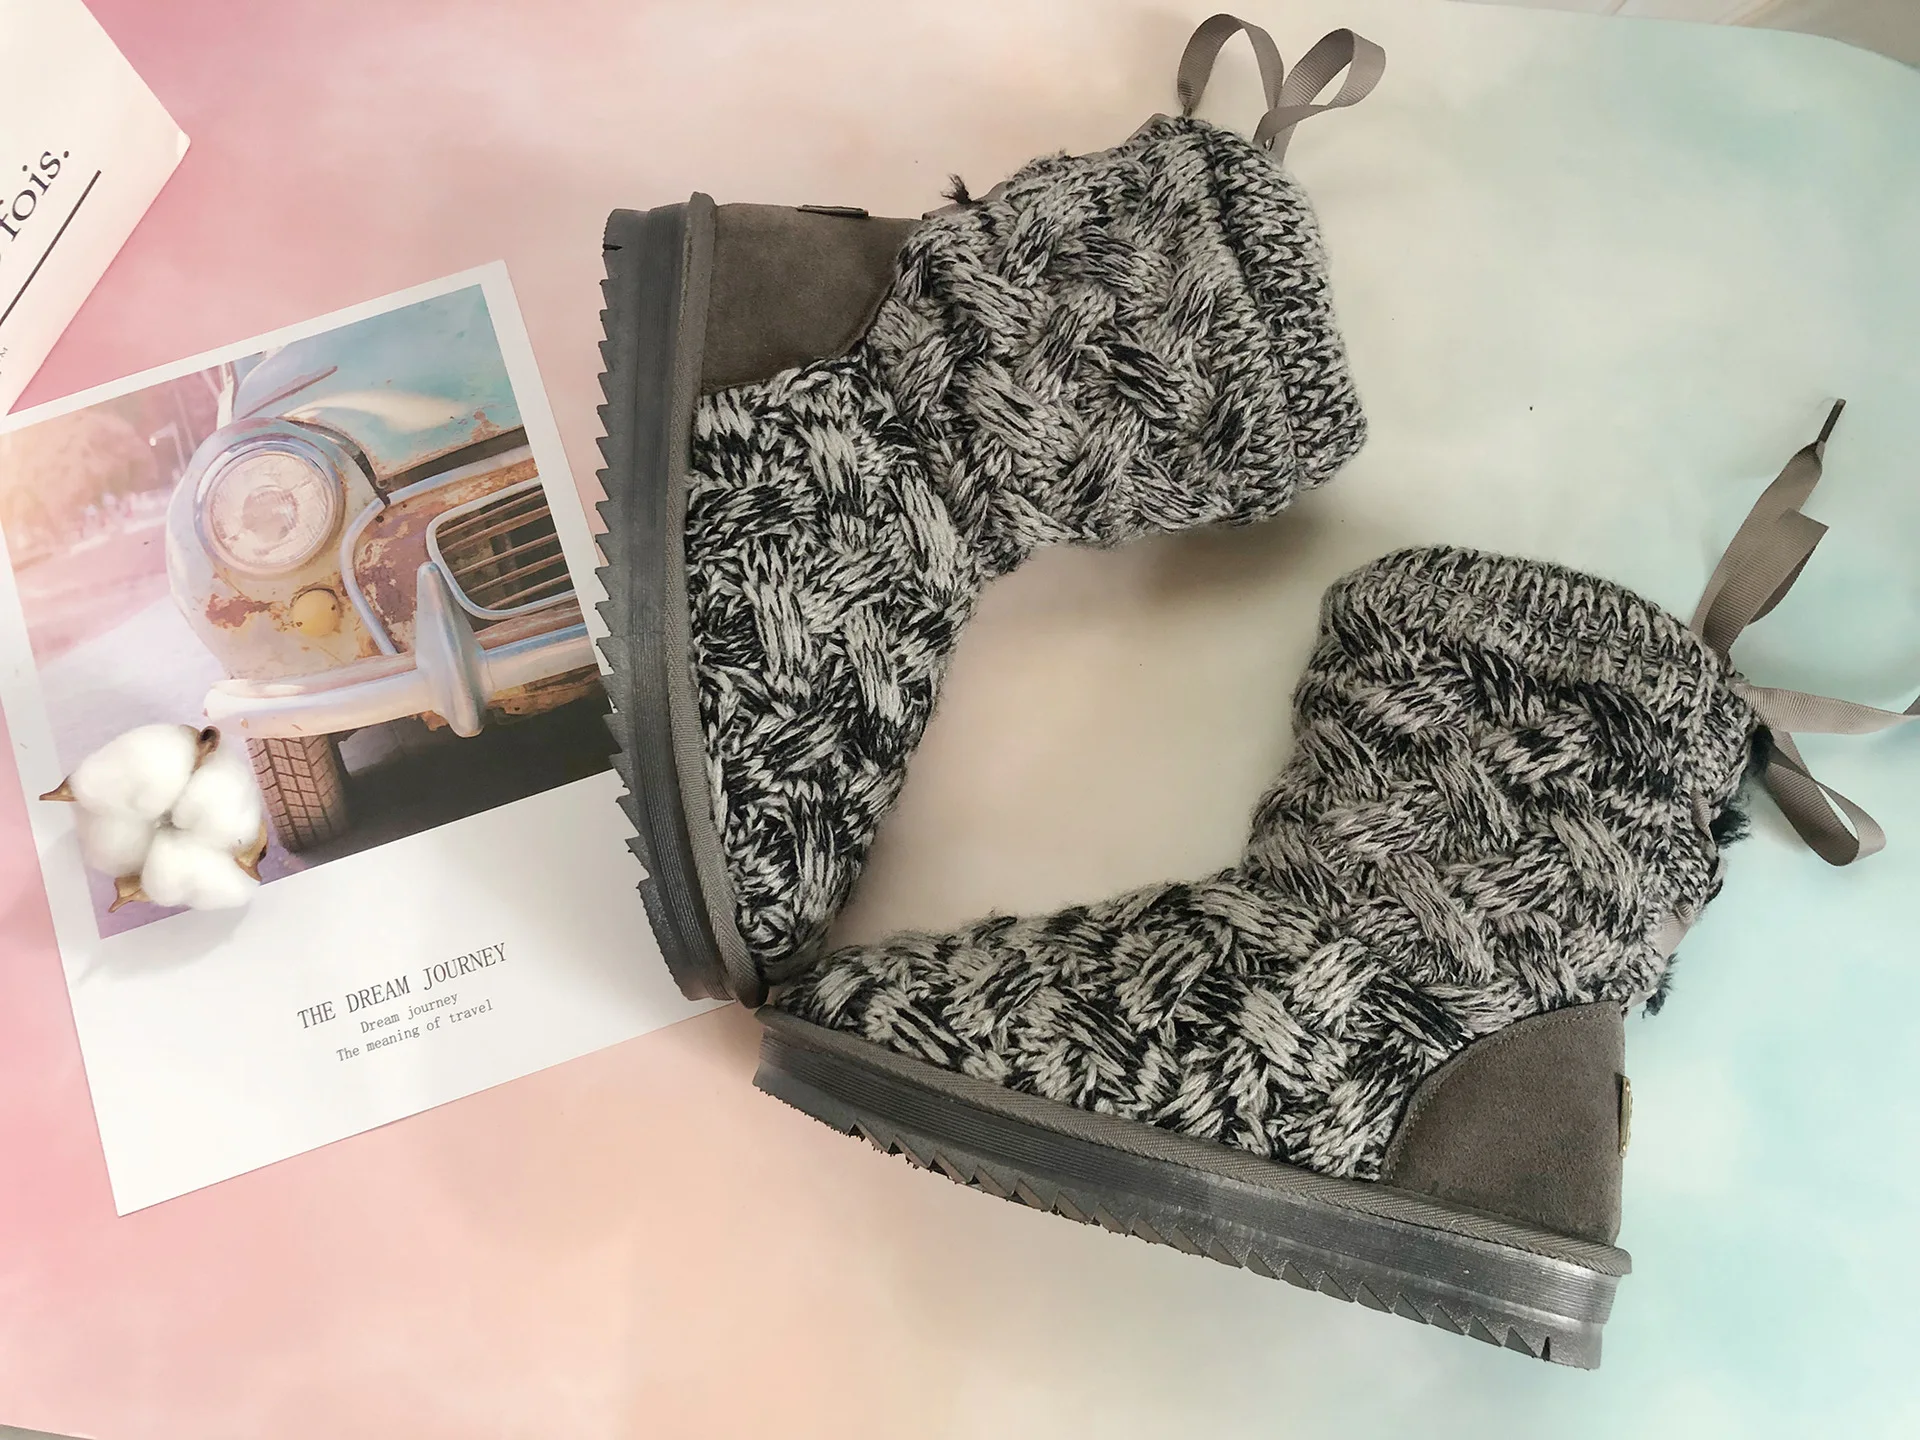 Прямая поставка; женские ботинки с вышивкой; зимняя теплая Домашняя обувь с хлопковой подкладкой; зимние плюшевые ботинки с мягкой подошвой; 796